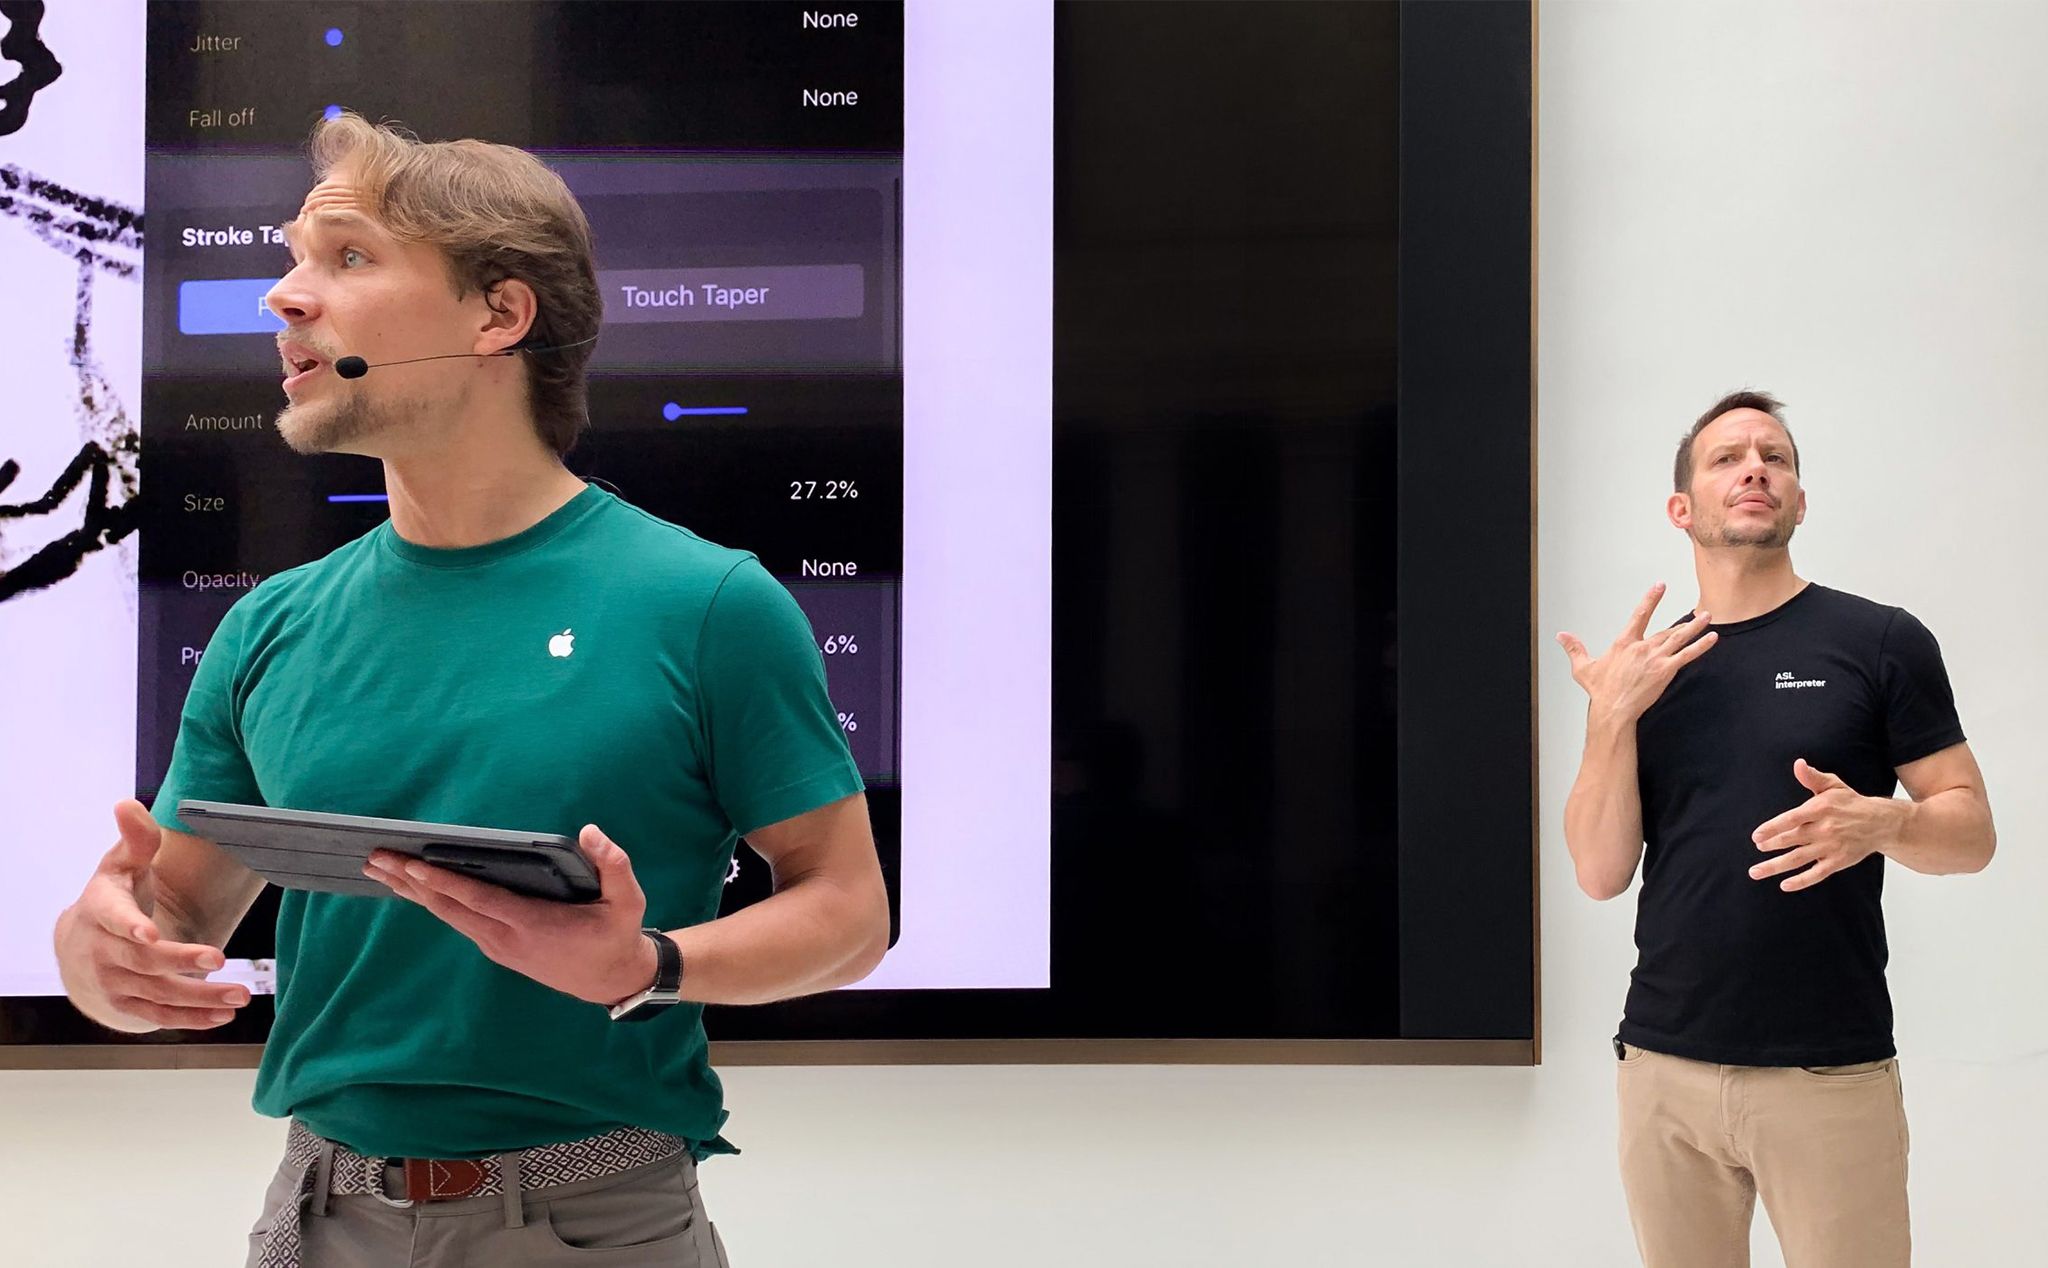 Khách hàng khiếm thính có thể yêu cầu Apple Store cử nhân viên hỗ trợ ngôn ngữ cử chỉ cho họ